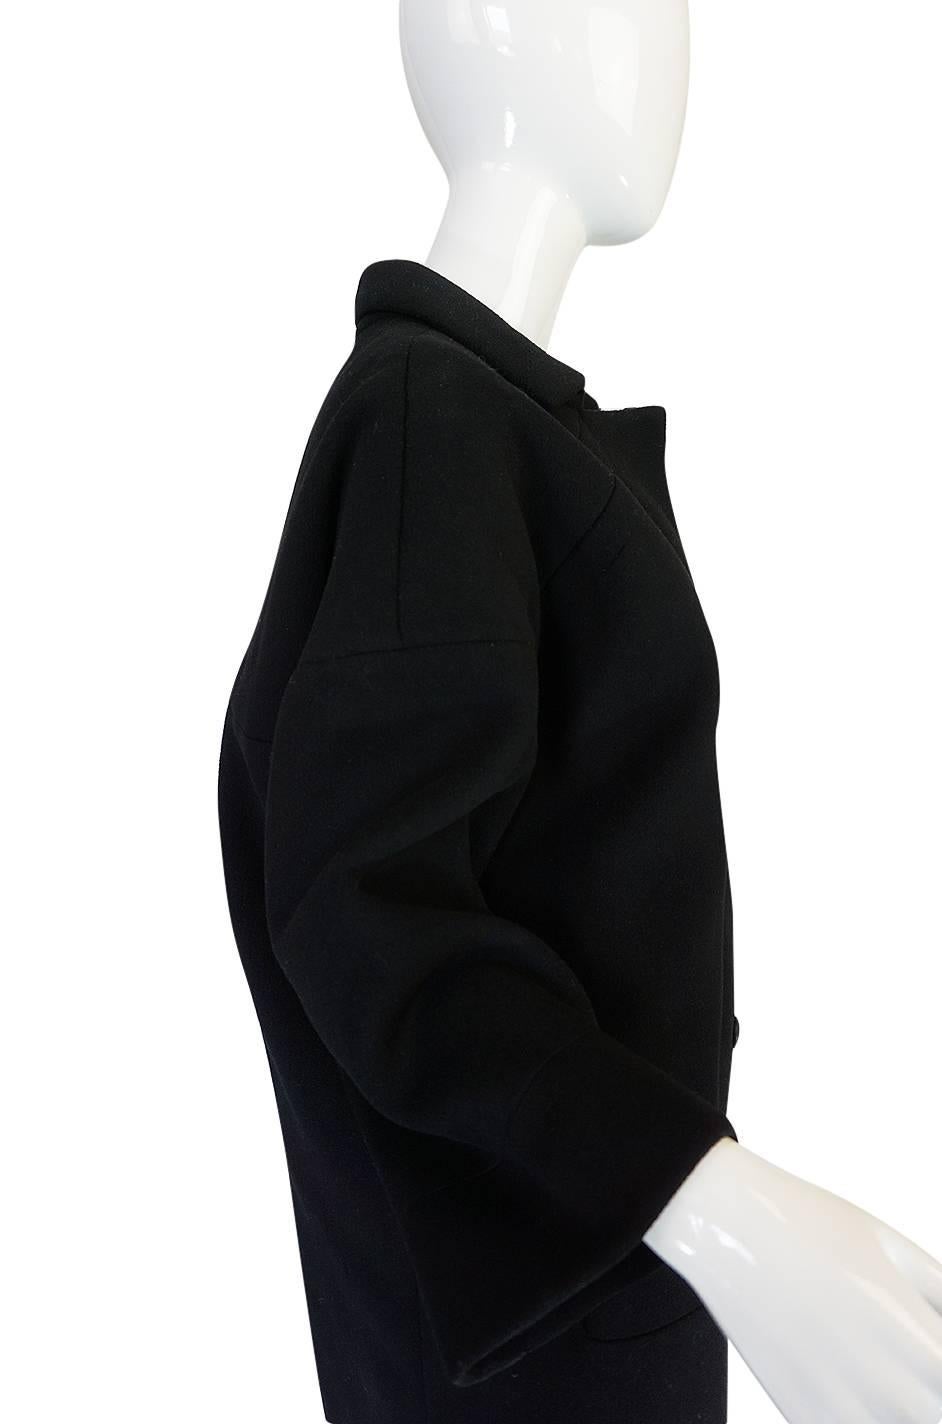 Black c1962-63 Cristobal Balenciaga Haute Couture Cashmere Coat